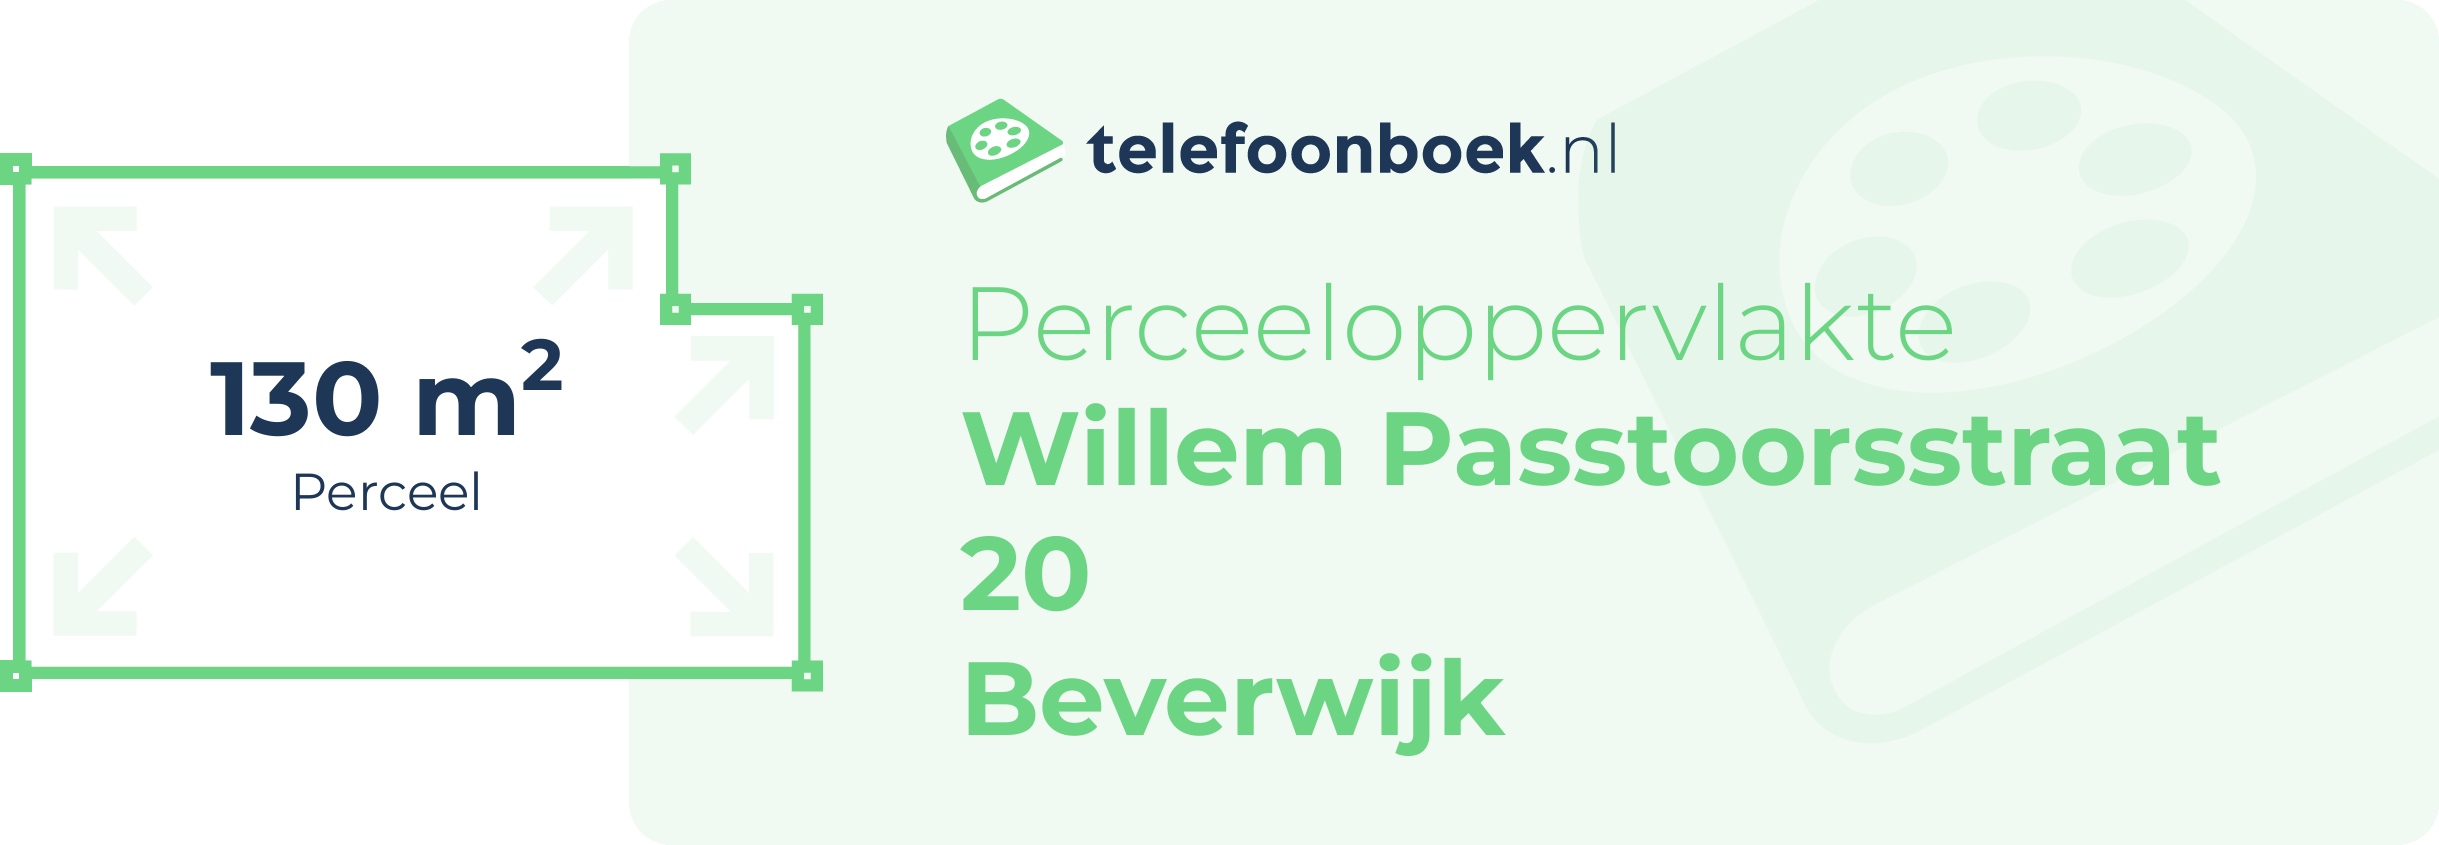 Perceeloppervlakte Willem Passtoorsstraat 20 Beverwijk